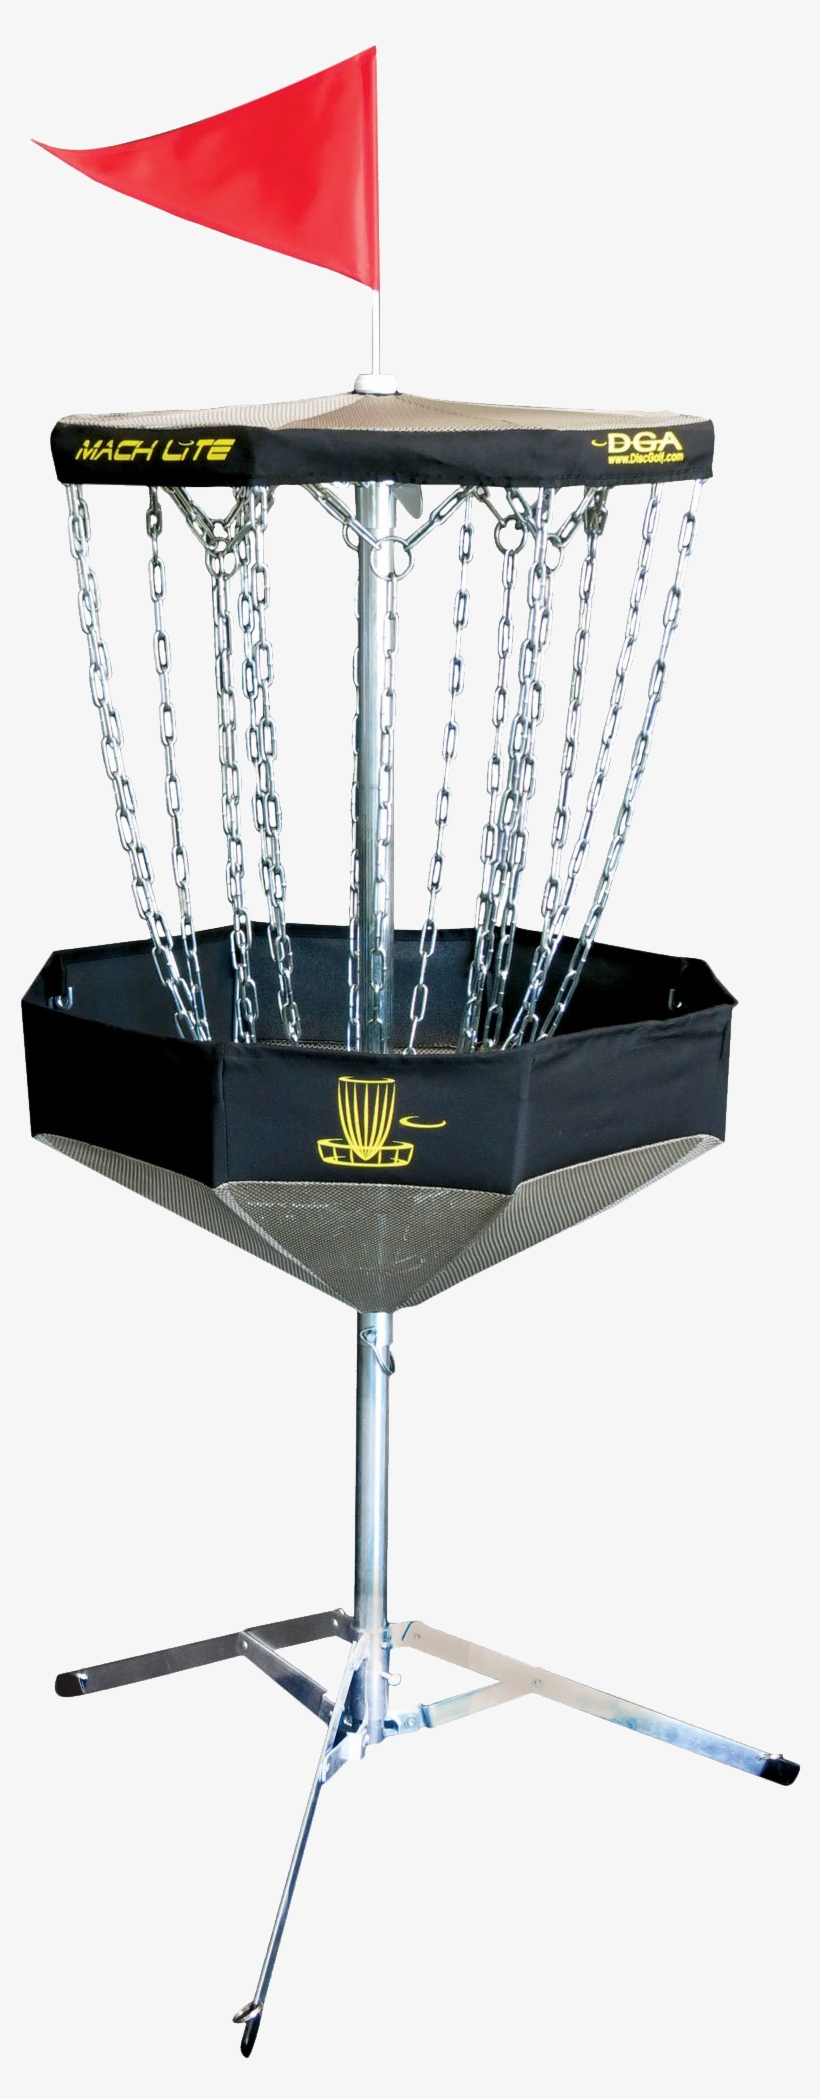 Dga Mach Lite Portable Disc Golf Basket - Mach Lite Disc Golf Basket, transparent png #2634479